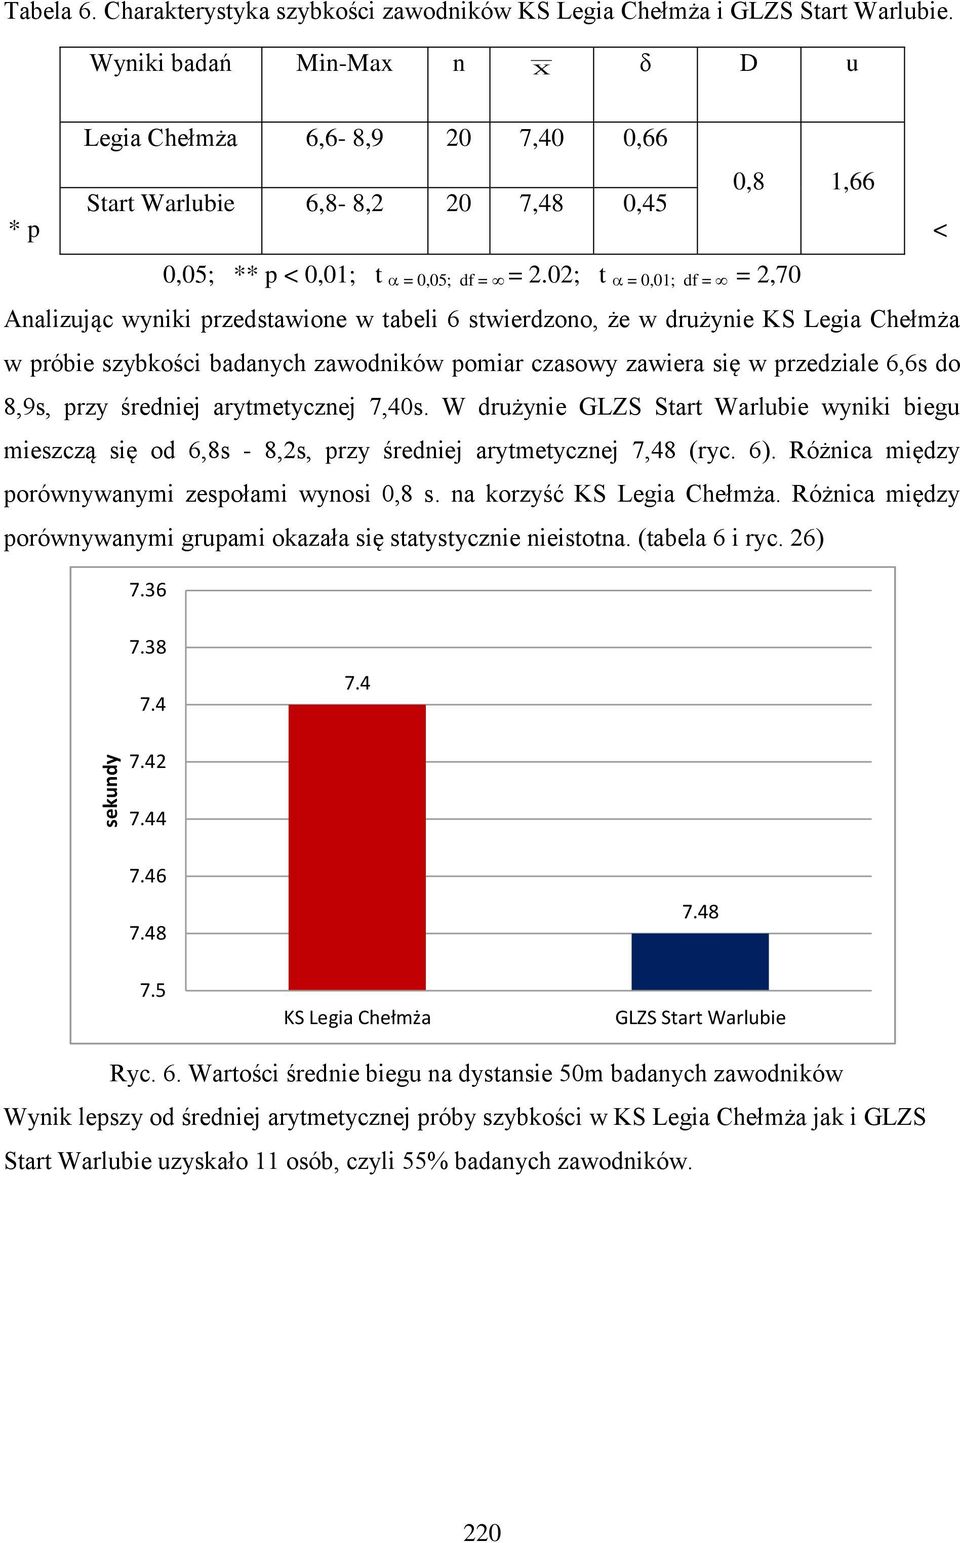 02; t = 0,01; df = = 2,70 Analizując wyniki przedstawione w tabeli 6 stwierdzono, że w drużynie KS Legia Chełmża w próbie szybkości badanych zawodników pomiar czasowy zawiera się w przedziale 6,6s do